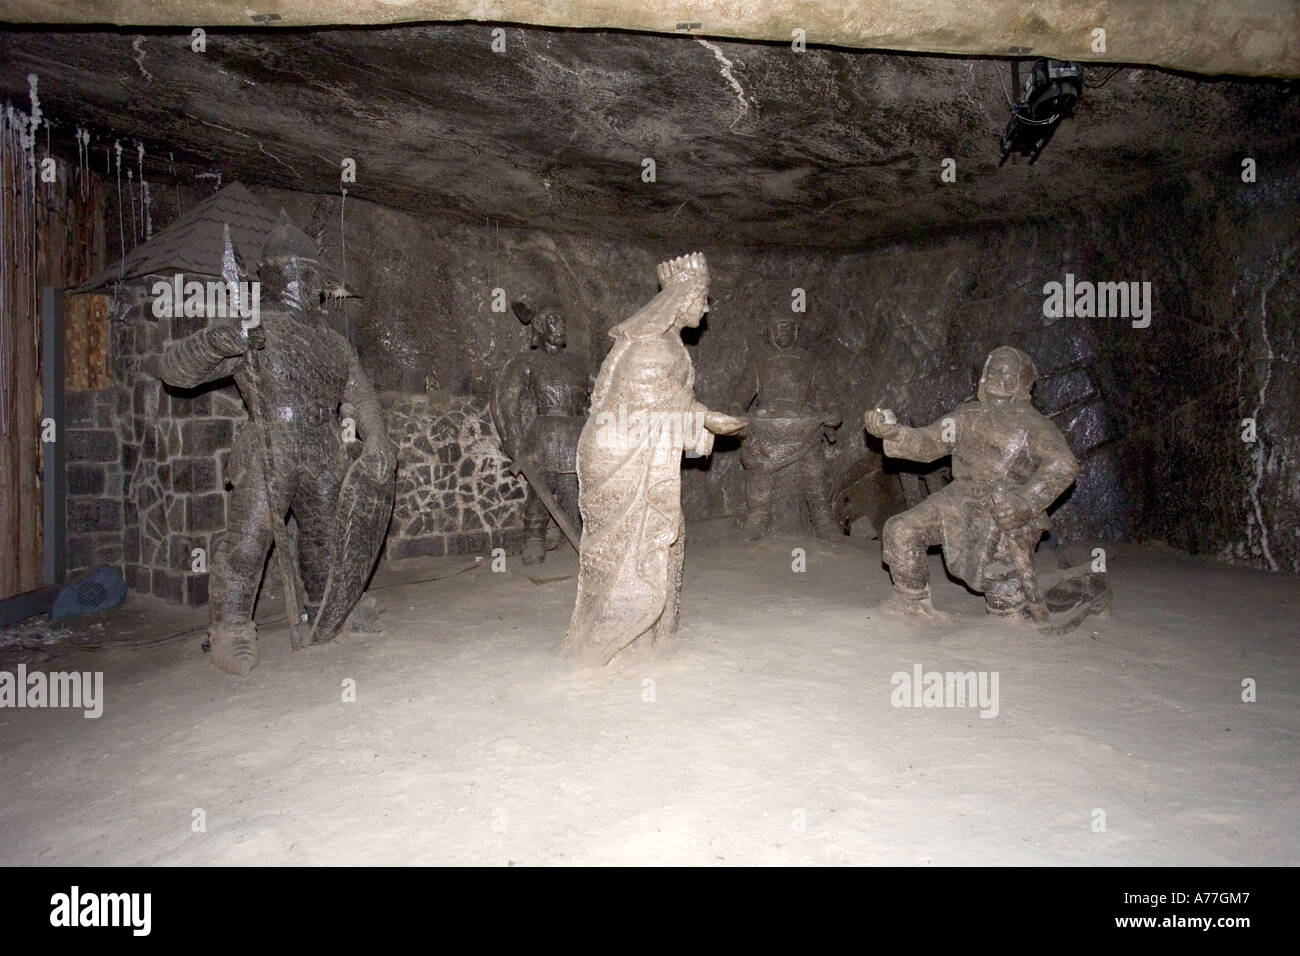 The Janowice Chamber of the Wieliczka Salt Mines in Krakow, Poland. Stock Photo